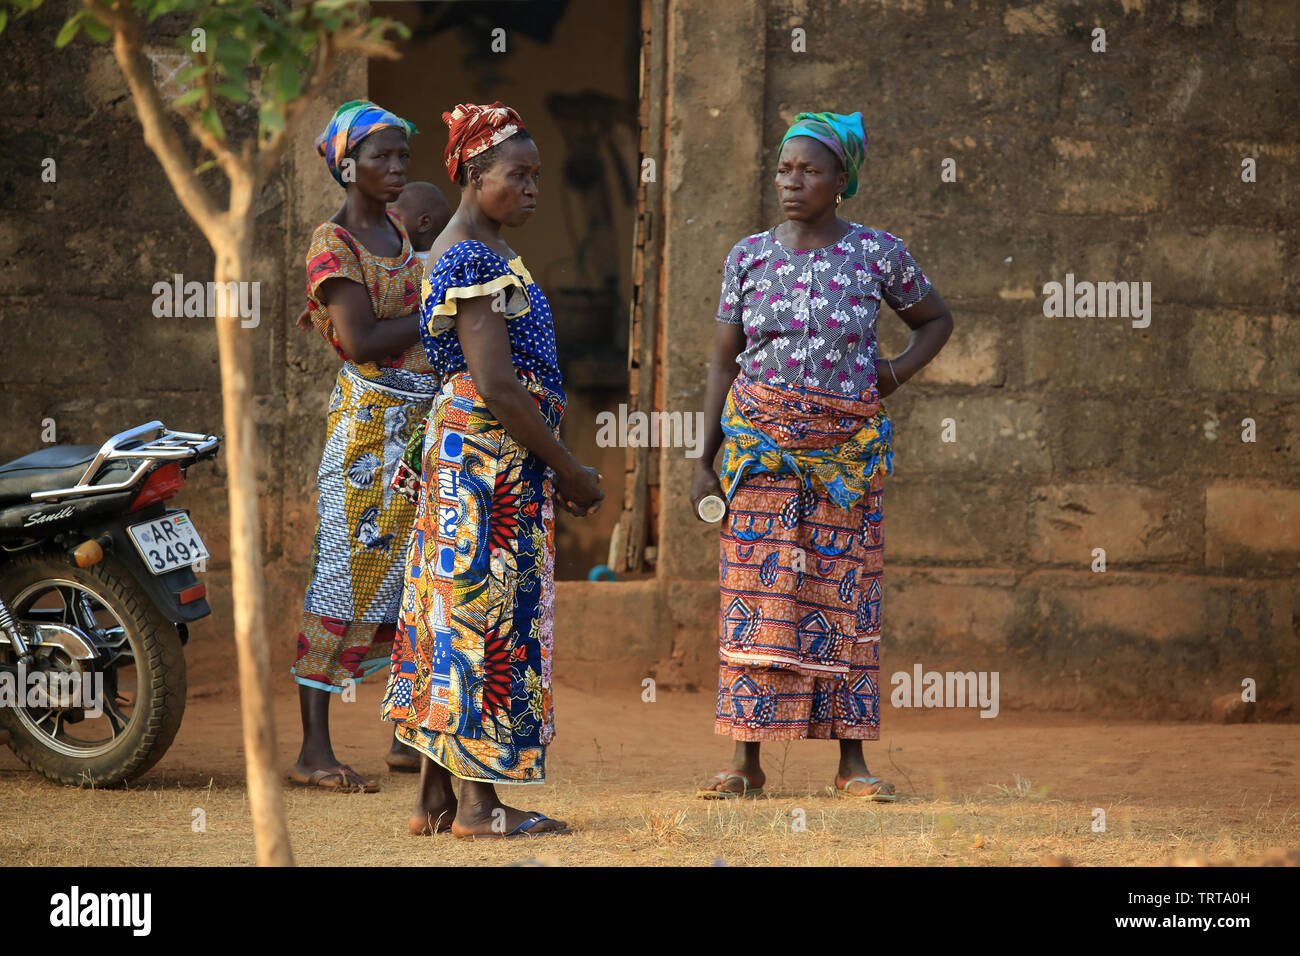 Femmes togolaises discutant ensemble.Togo. Afrique de l'Ouest. Foto Stock